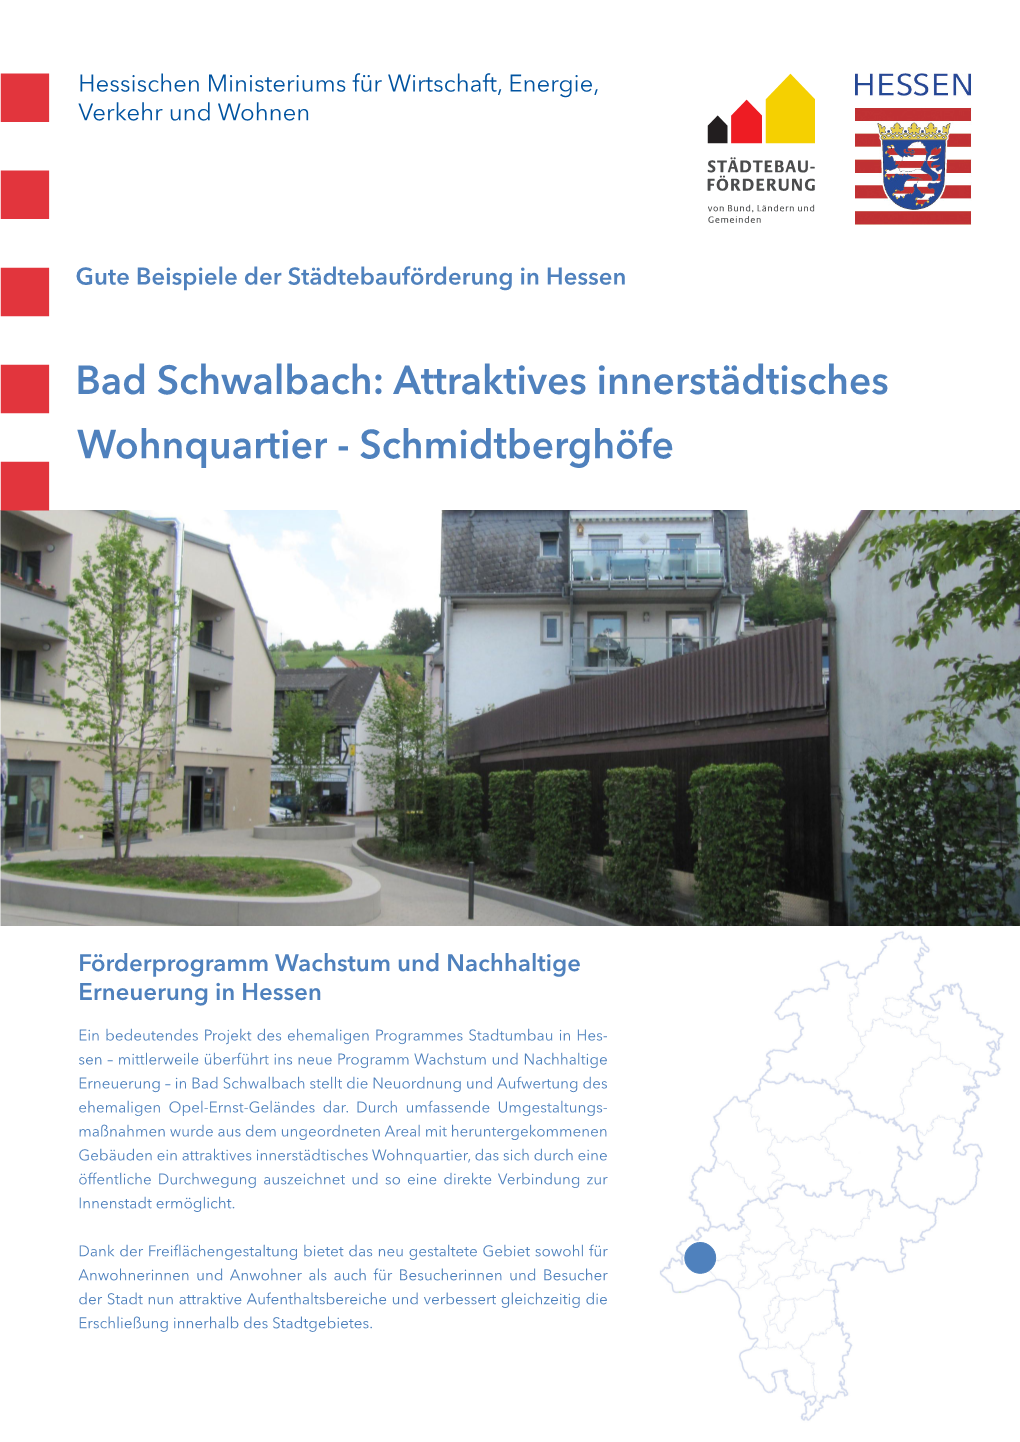 Bad Schwalbach: Attraktives Innerstädtisches Wohnquartier - Schmidtberghöfe